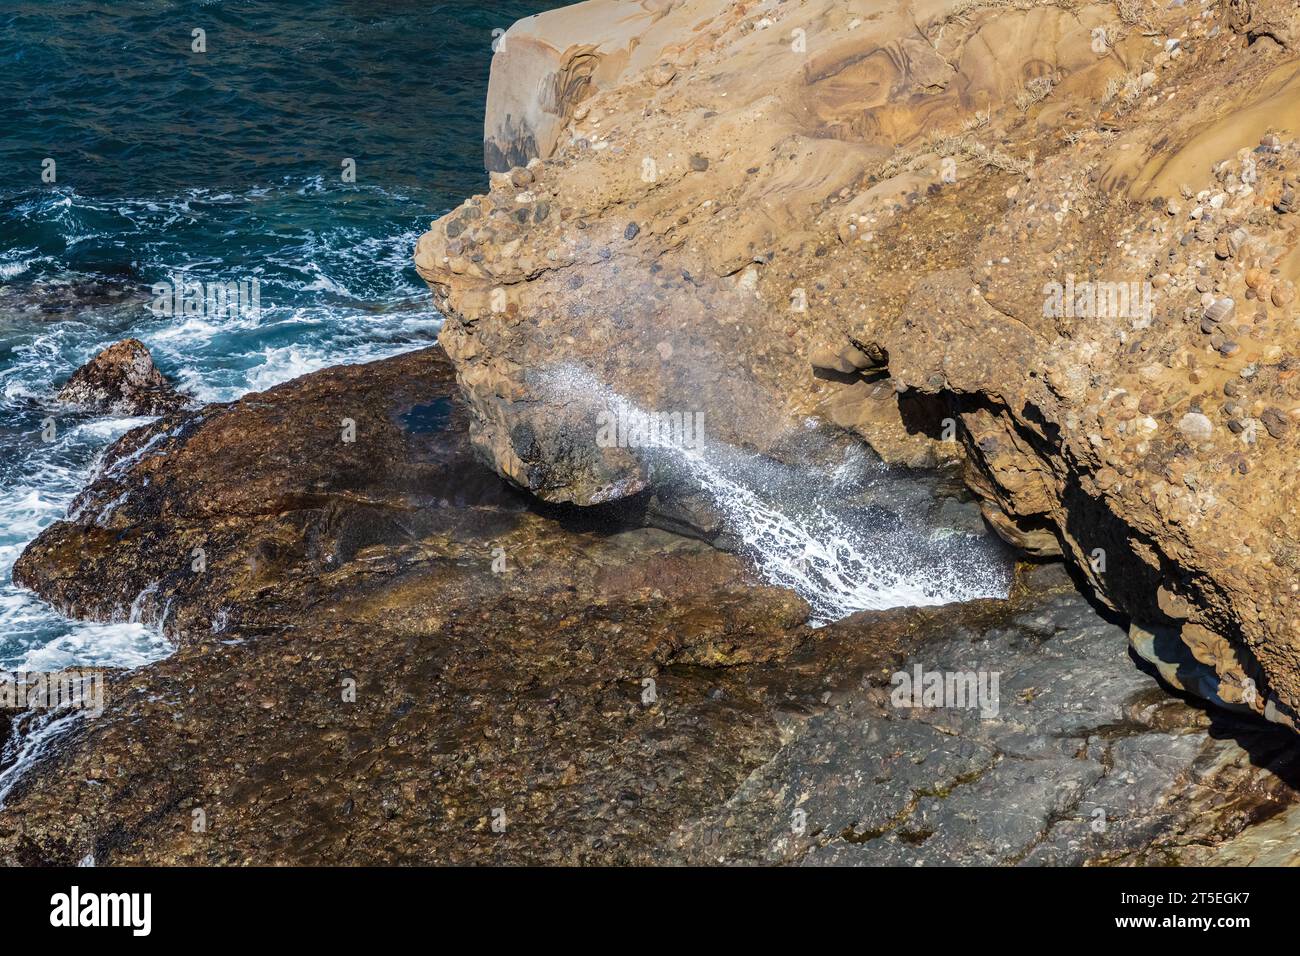 Blowhole sulla costa della California, nella riserva naturale statale di Point Lobos. Acqua che sgorga attraverso il buco; rocce e oceano visibili. Foto Stock